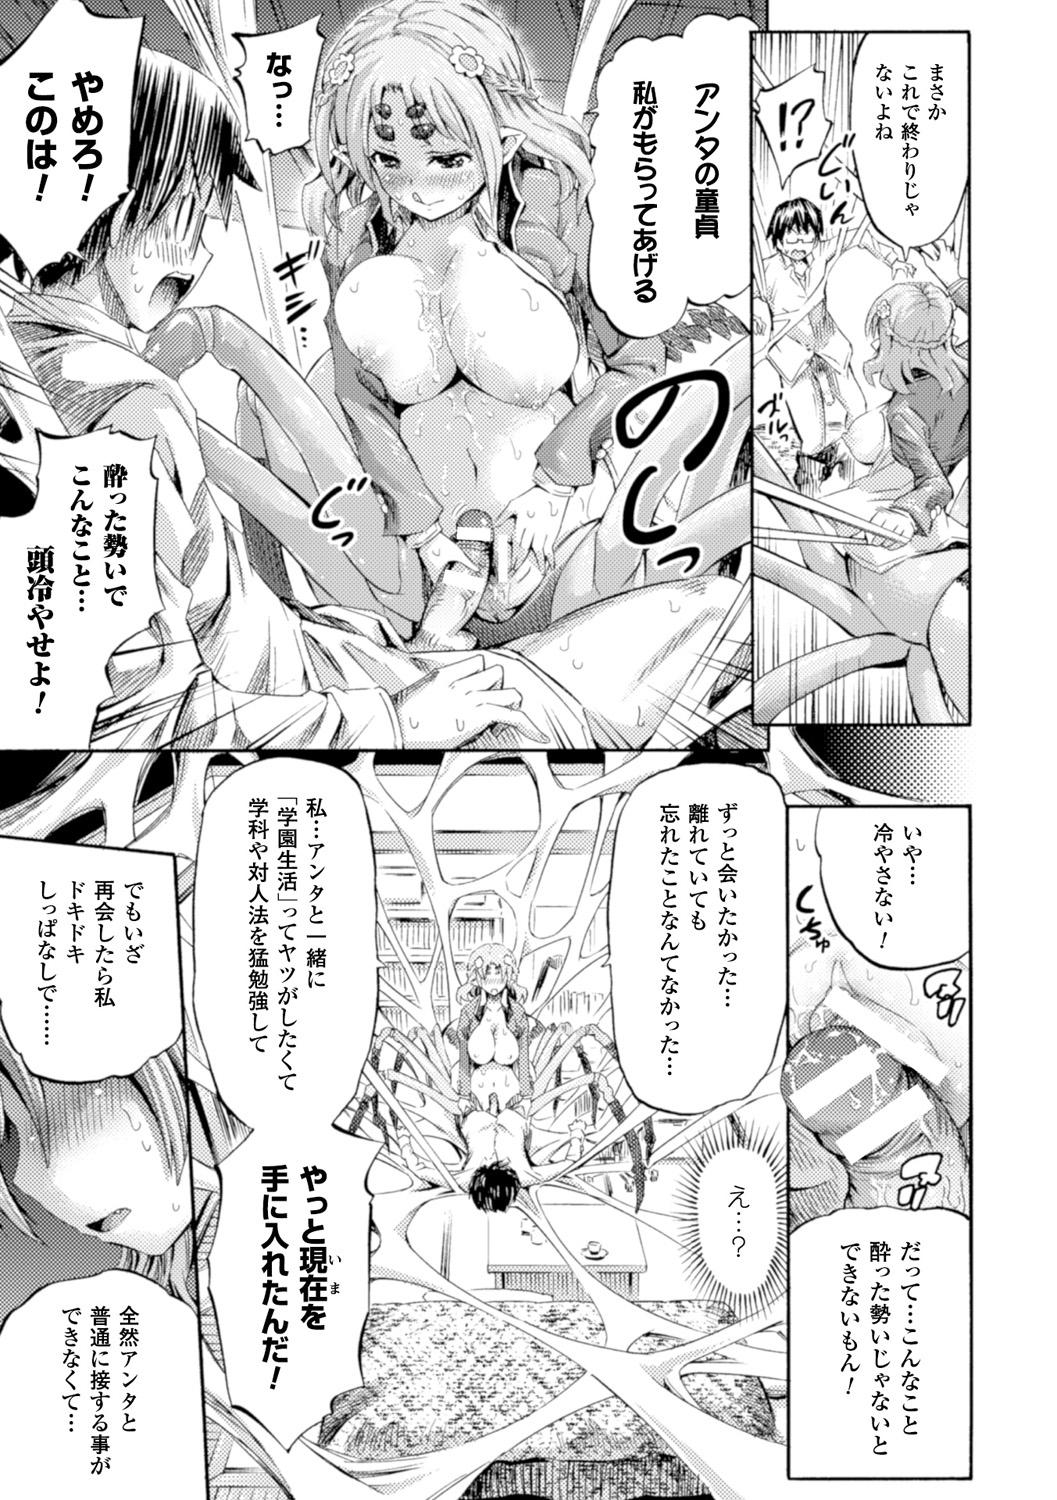 Bessatsu Comic Unreal Monster Musume Paradise Digital Ban Vol. 7 14